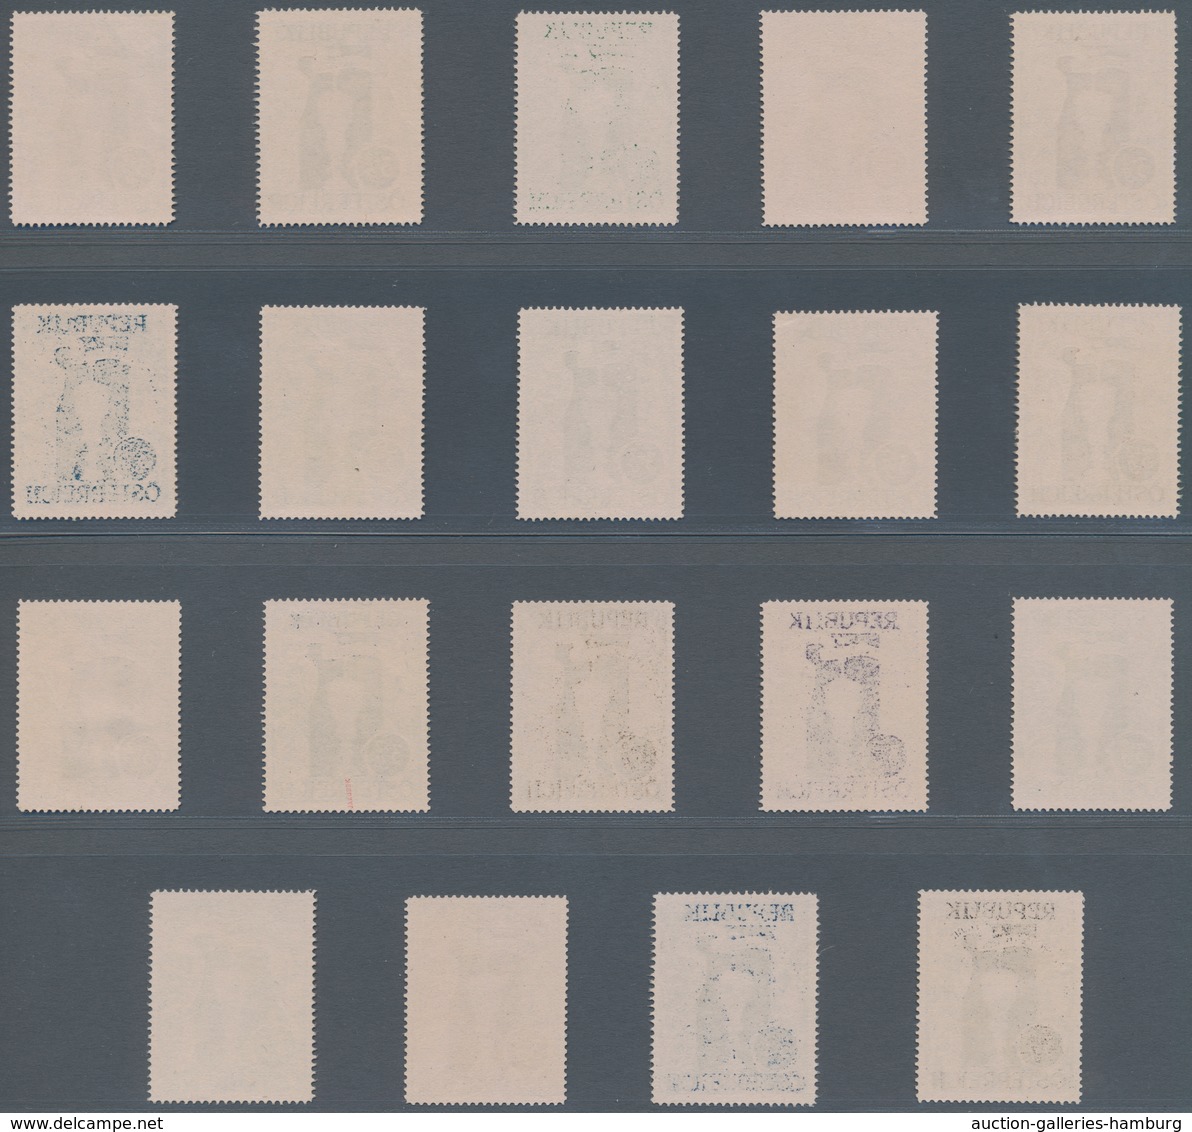 Österreich: 1947, 3 Gr. + 2 Gr. "Kunstausstellung", 19 (meist) verschiedene Farbproben in Linienzähn